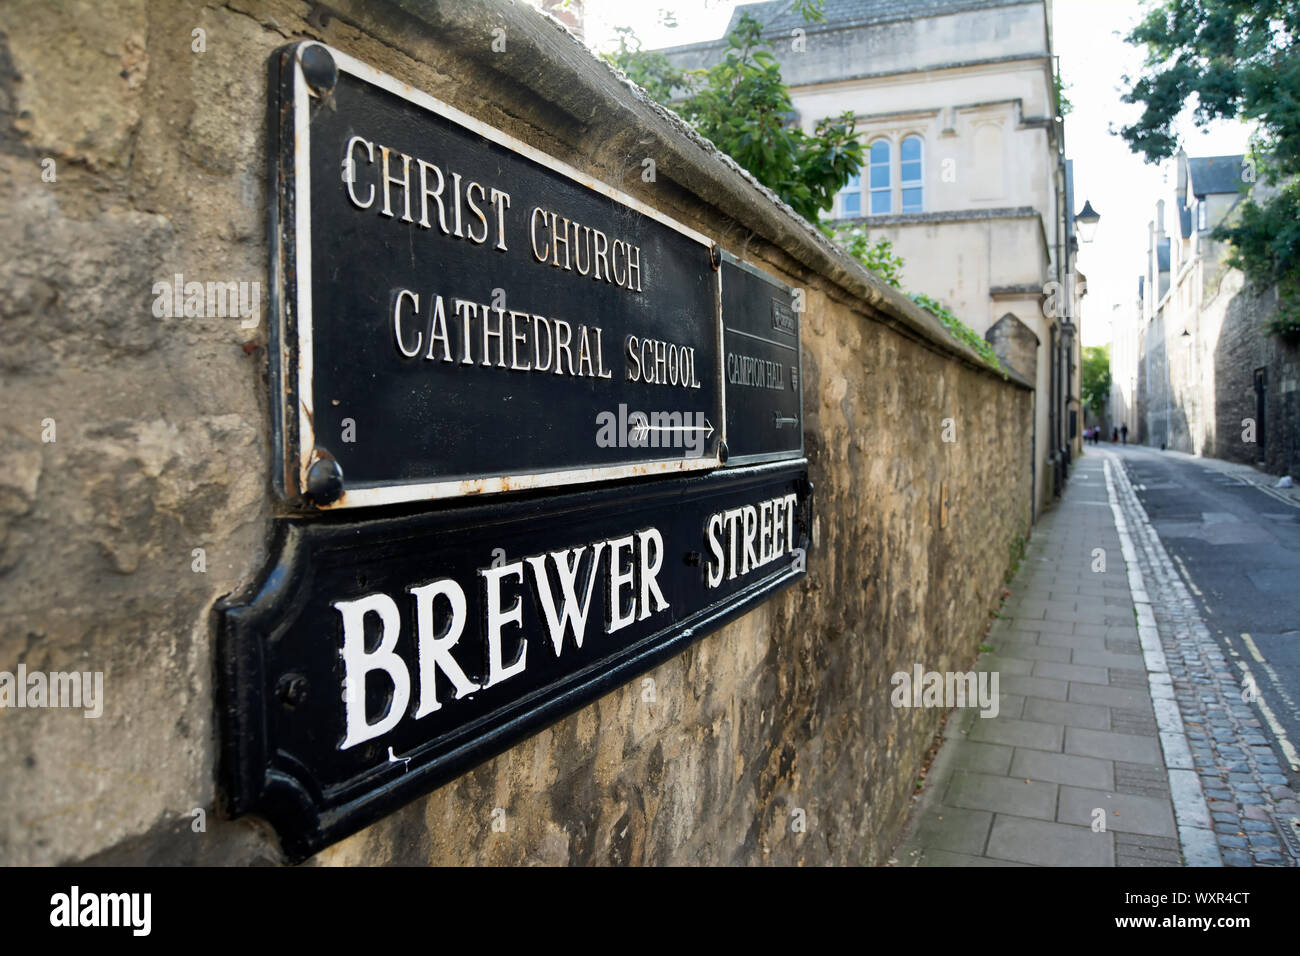 El nombre de la calle para firmar brewer Street, Oxford, Inglaterra, bajo la dirección firme de Christ Church Cathedral School Foto de stock